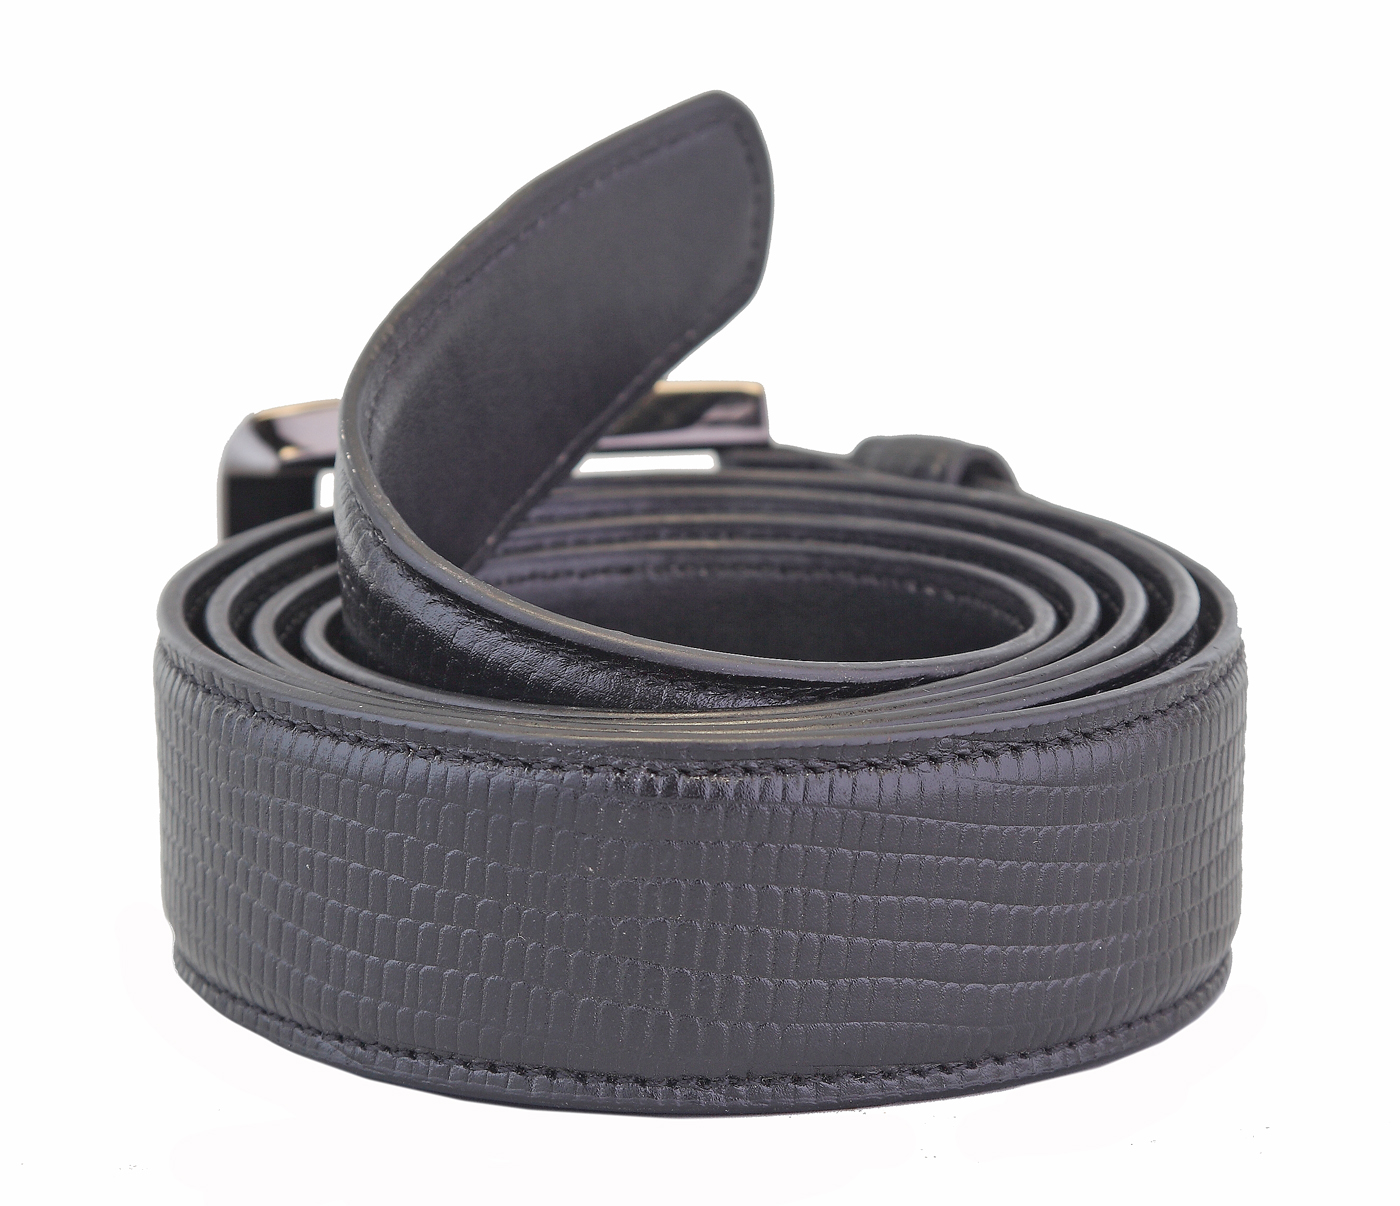  Leather Belt(Black)BL7